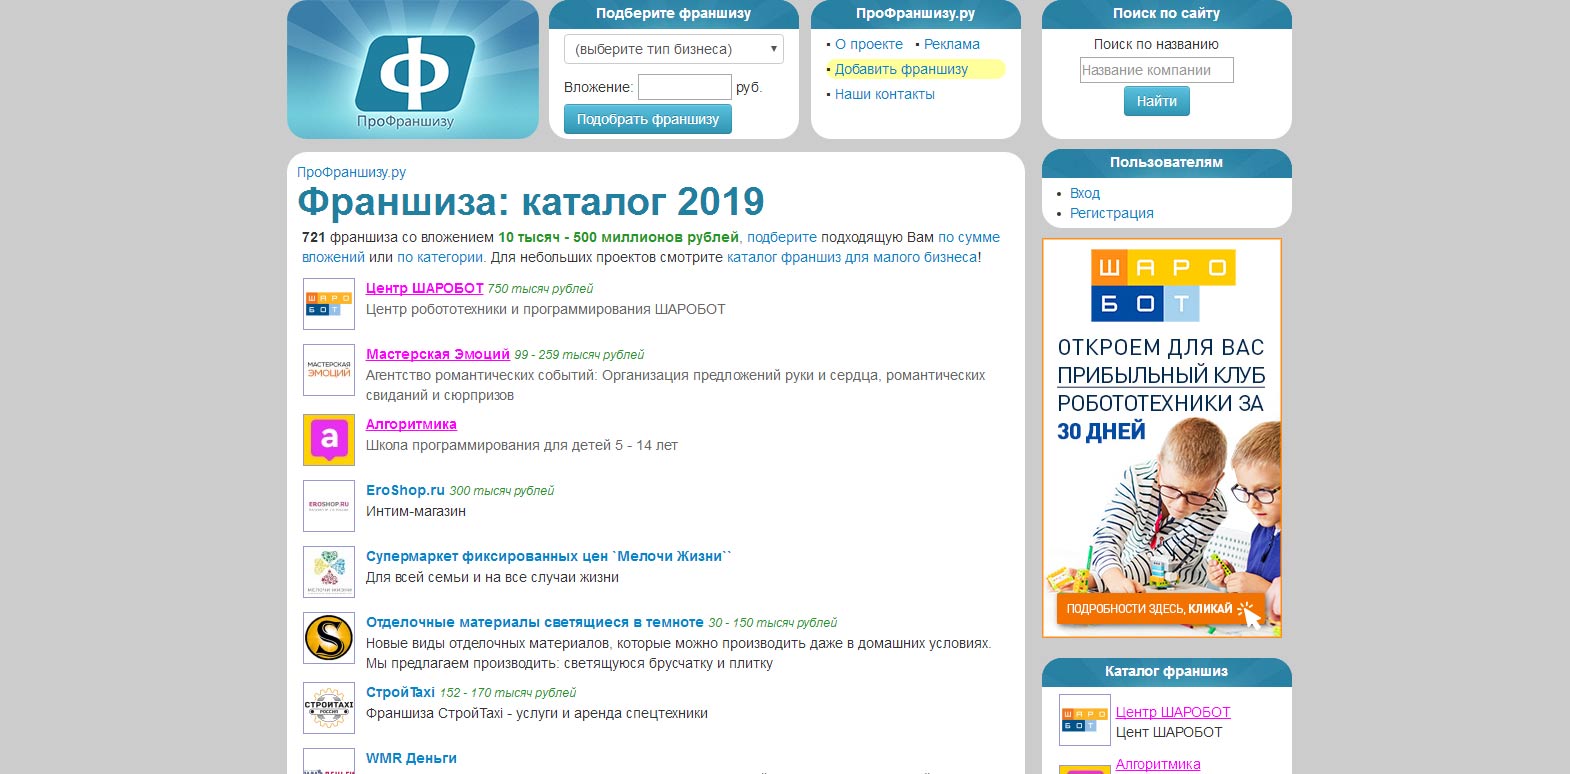 Франшиза 2019 года для бизнеса каталог валберис михайловка волгоградской области каталог